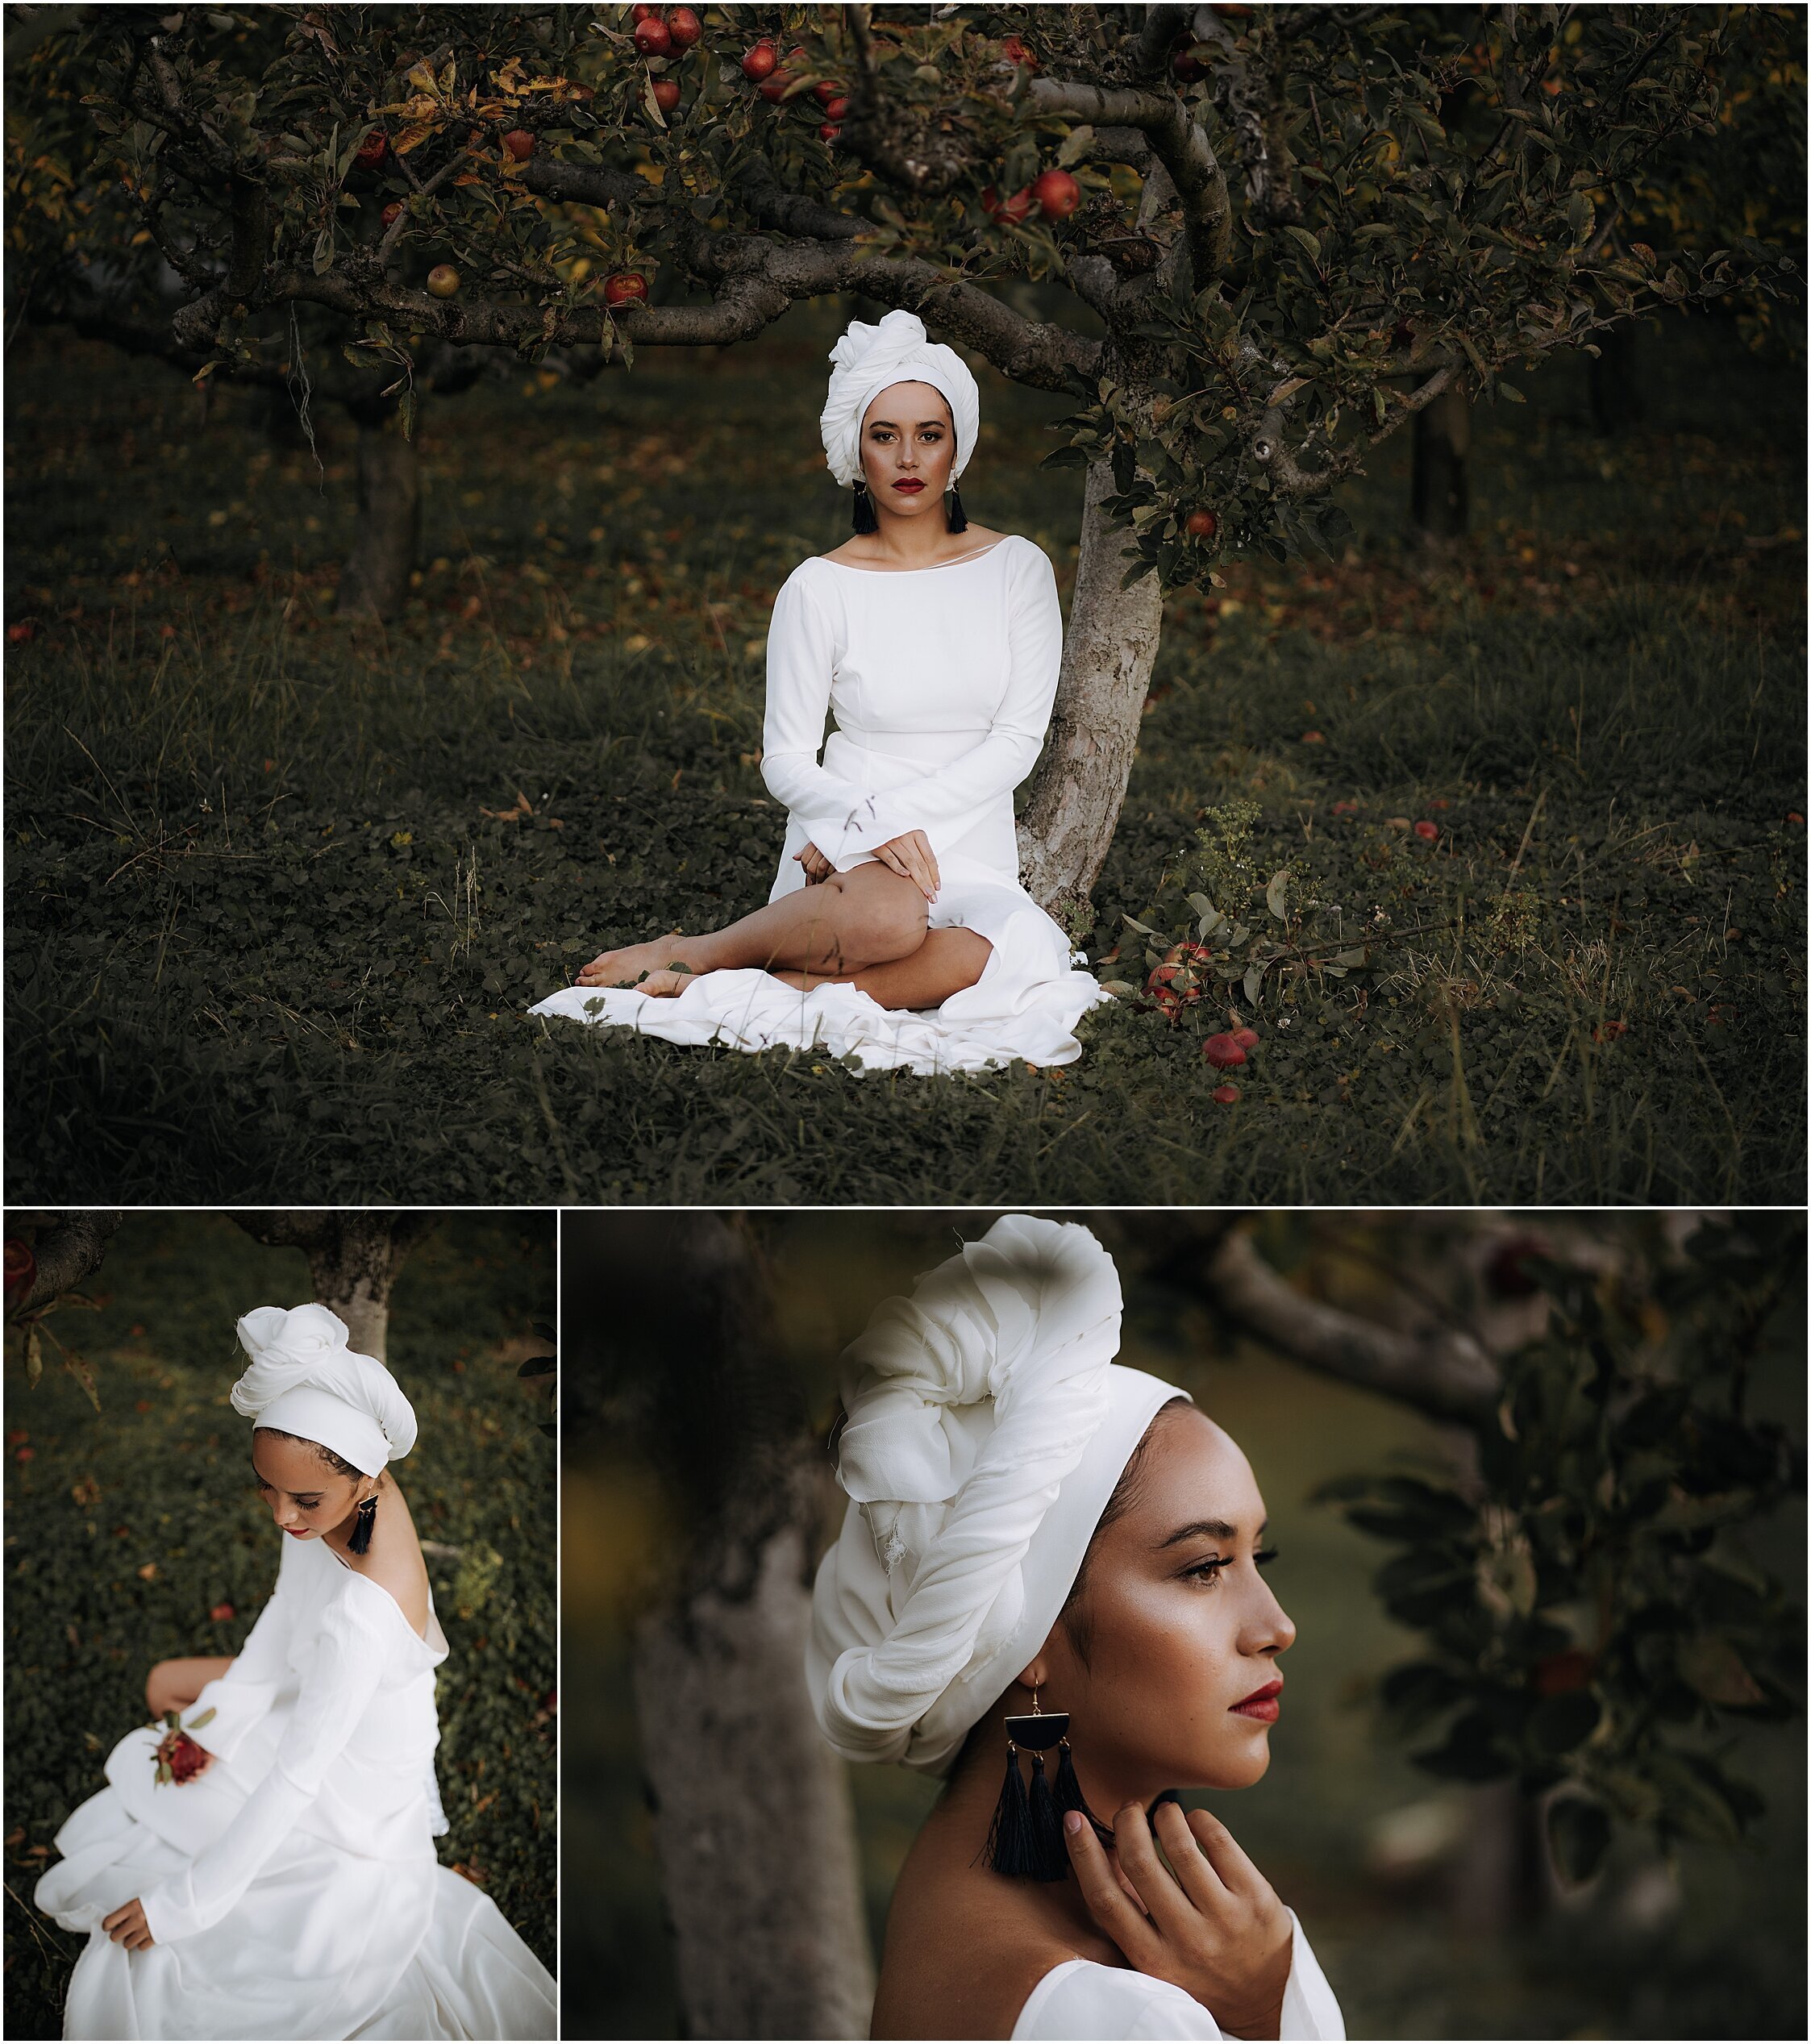 Zanda+Auckland+wedding+photographer+unique+portrait+photoshoot+ideas+autumn+winter+Windmill+apple+orchard+Coatesville+New+Zealand_29.jpeg